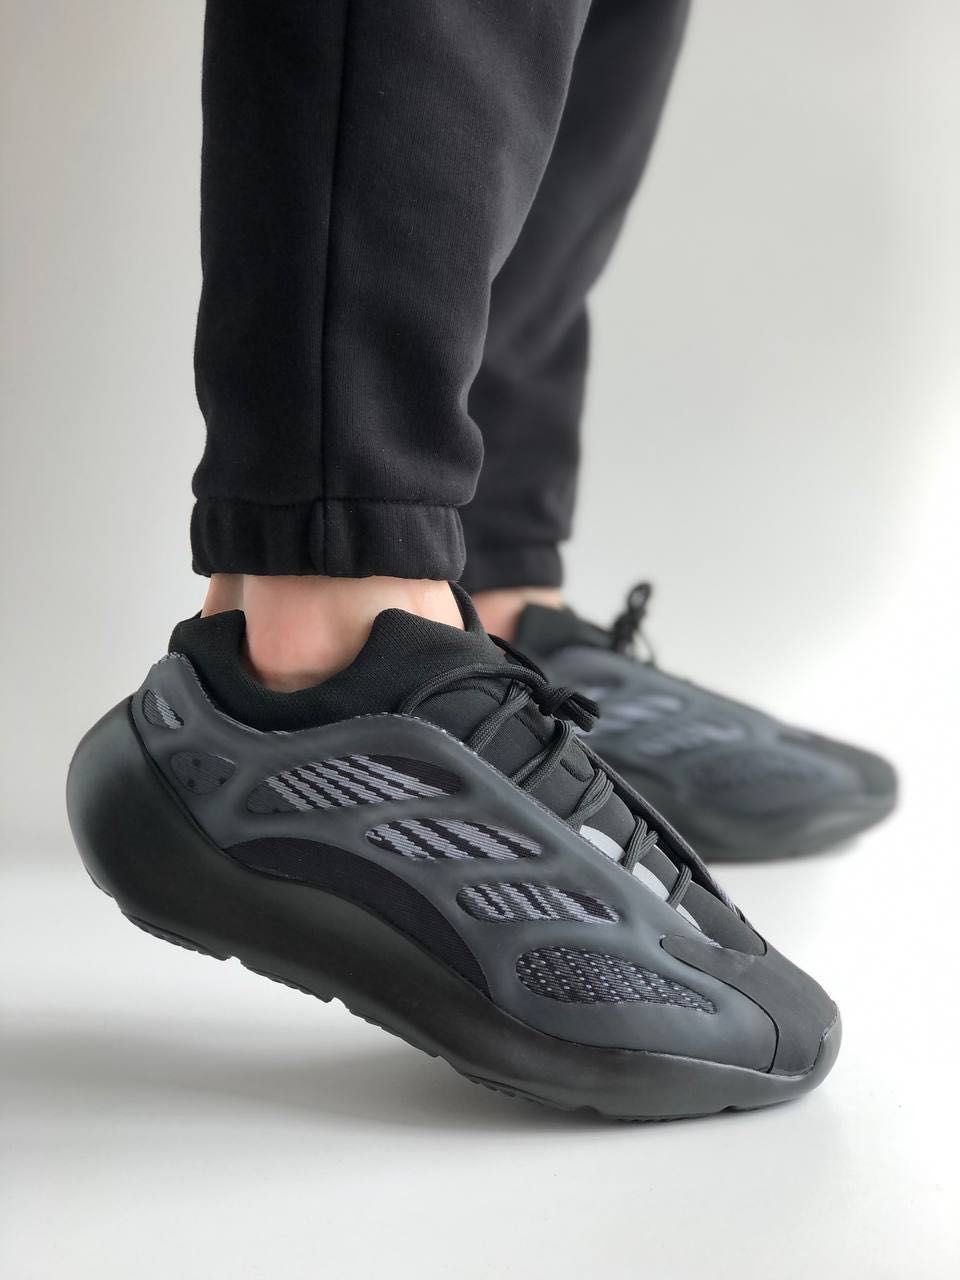 Мужские кроссовки Adidas Yeezy 700 V3 black . Размеры 40-45